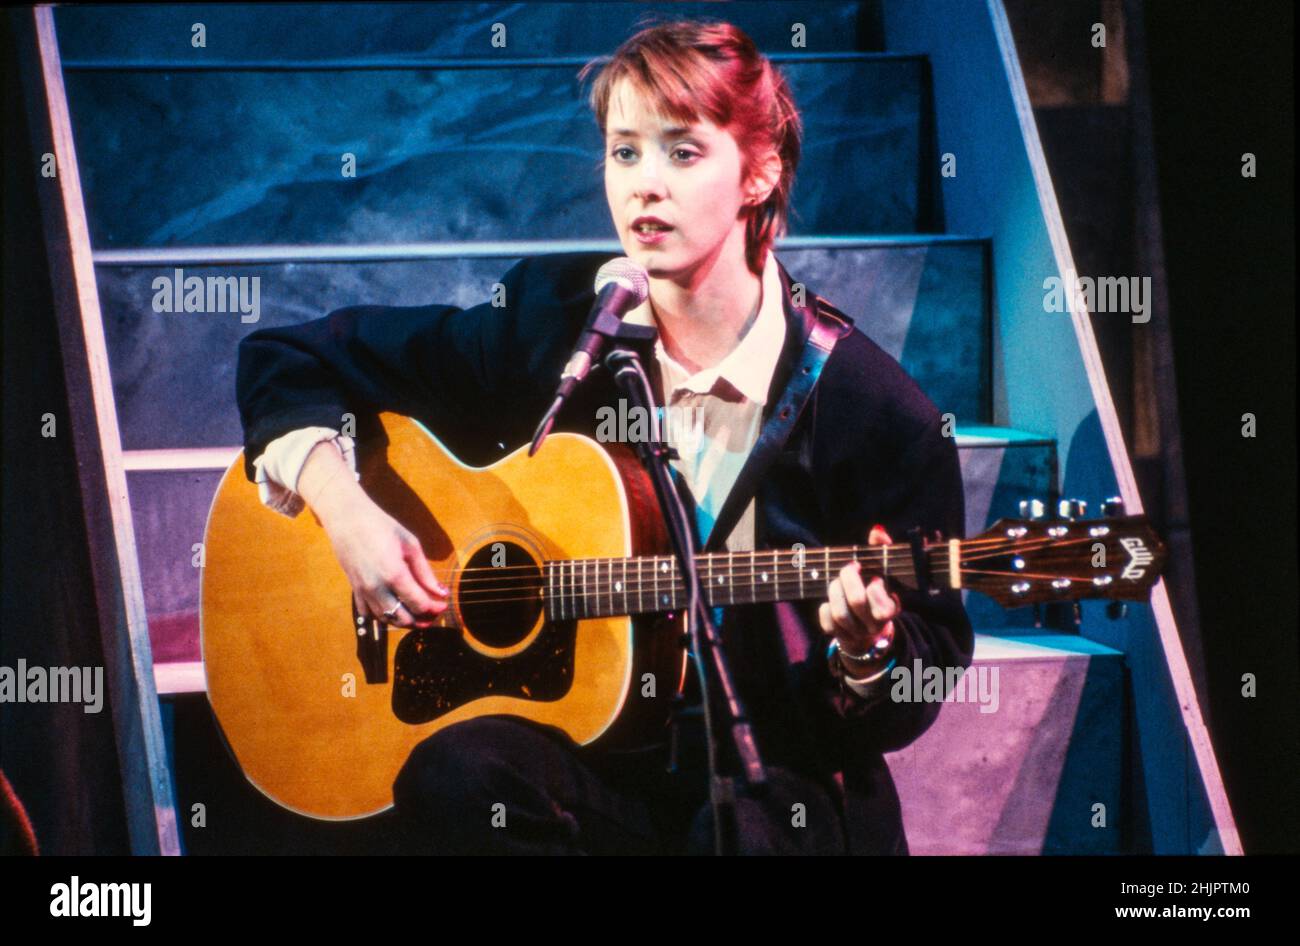 HILVERSUM, PAÍSES BAJOS - 06 DE NOVIEMBRE de 1985: La cantante y compositora estadounidense Suzanne Vega en la televisión holandesa. Foto de stock